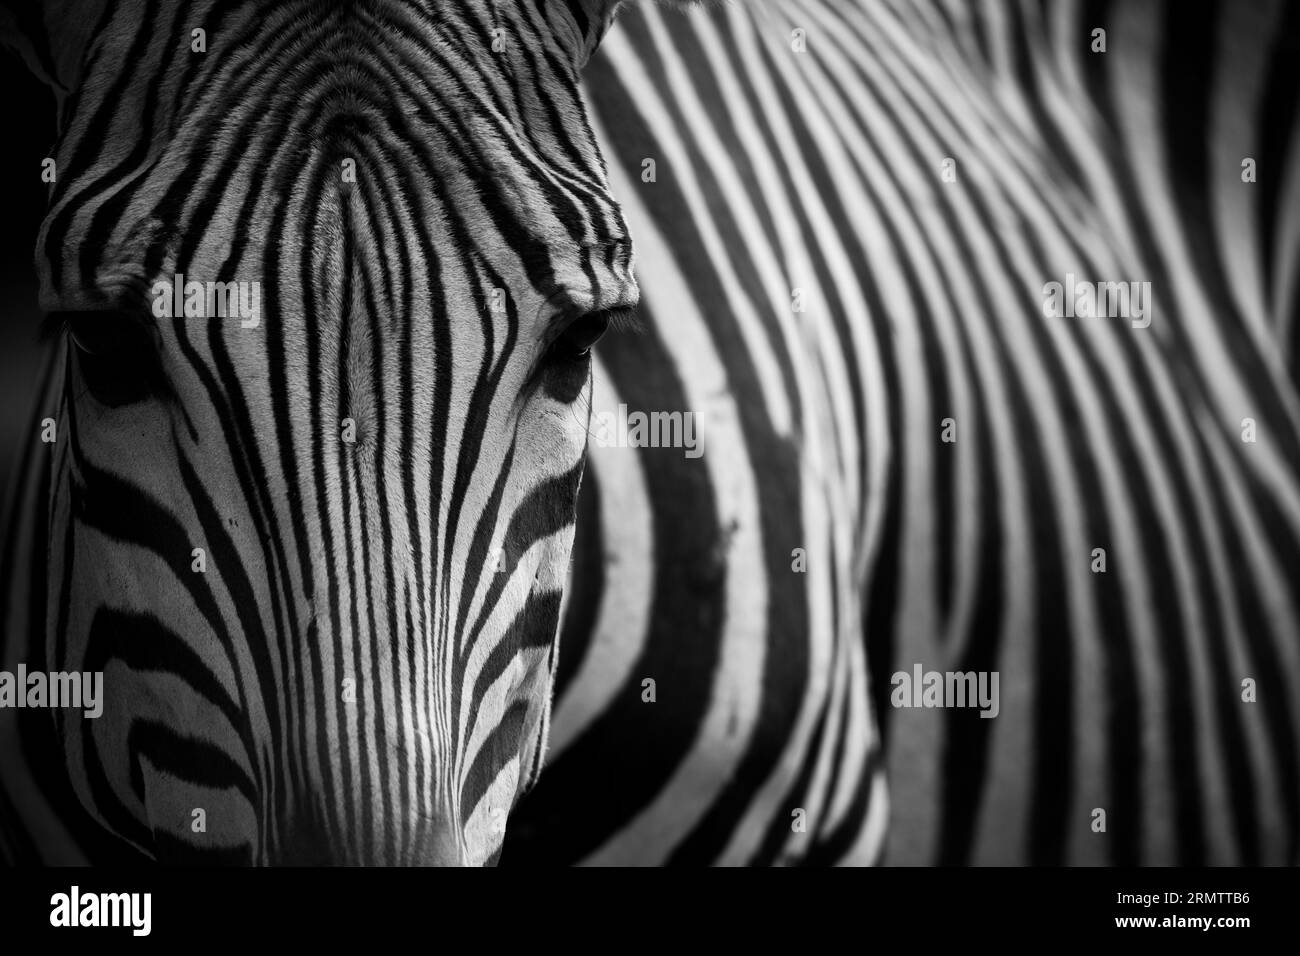 Nahaufnahme eines majestätischen Zebras, das in seinem natürlichen Lebensraum steht. Schwarzweißfotografie. Stockfoto